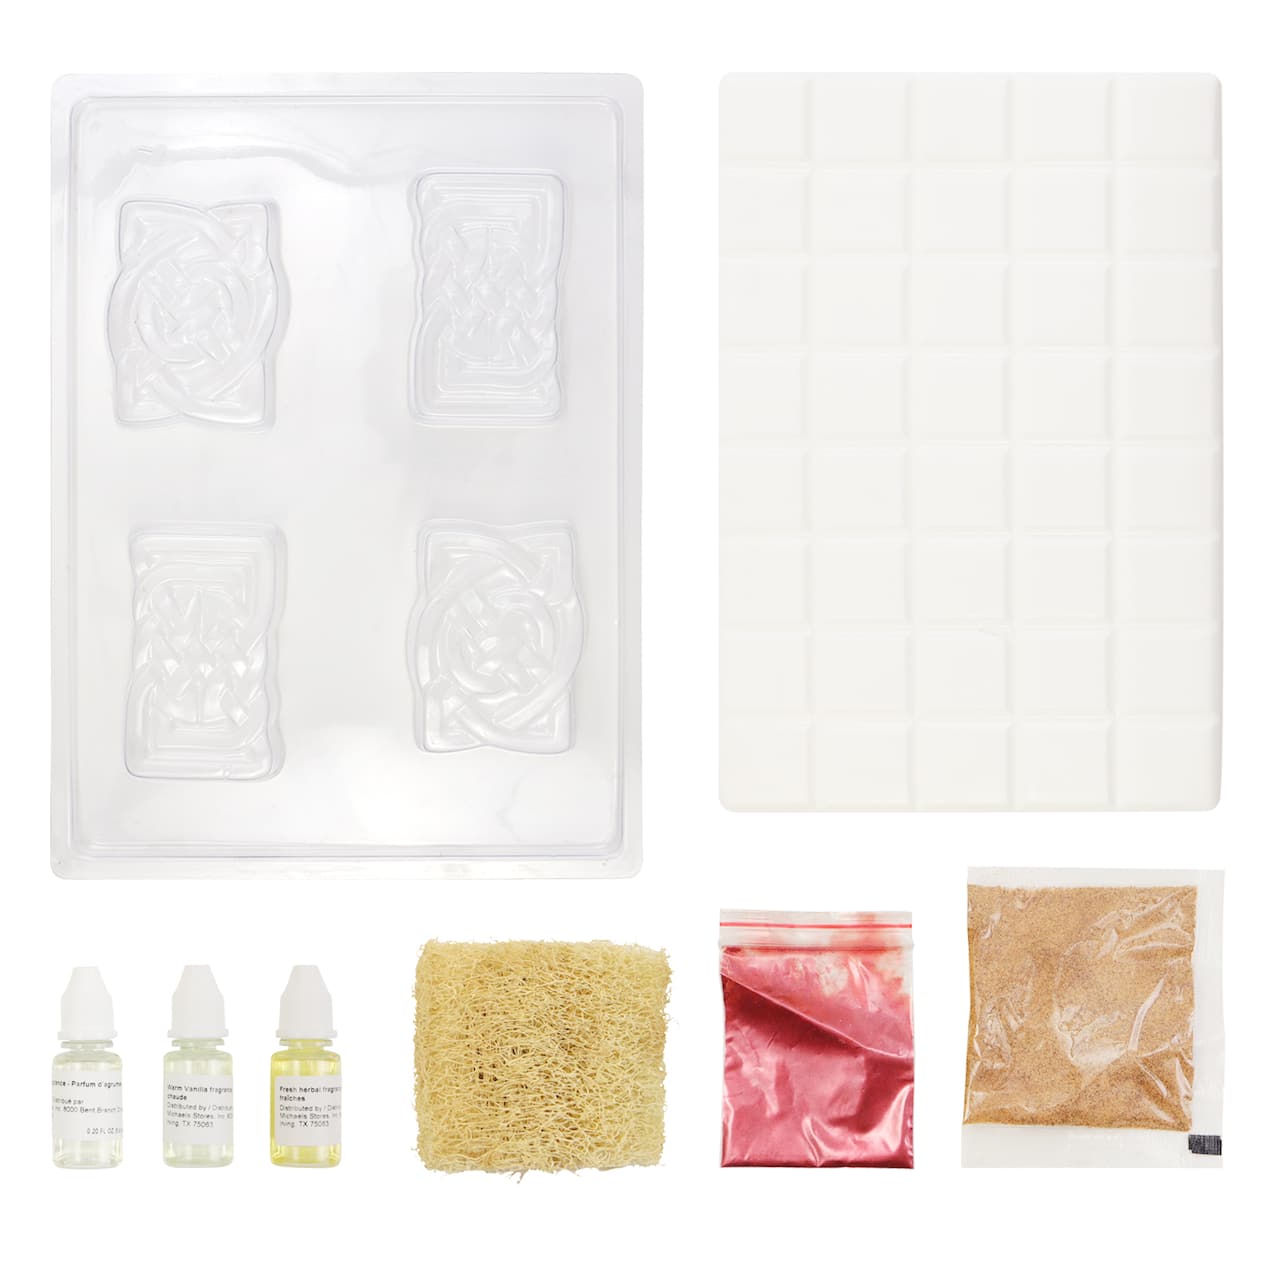 Botanical Soap Making Kit by Make Market&#xAE;